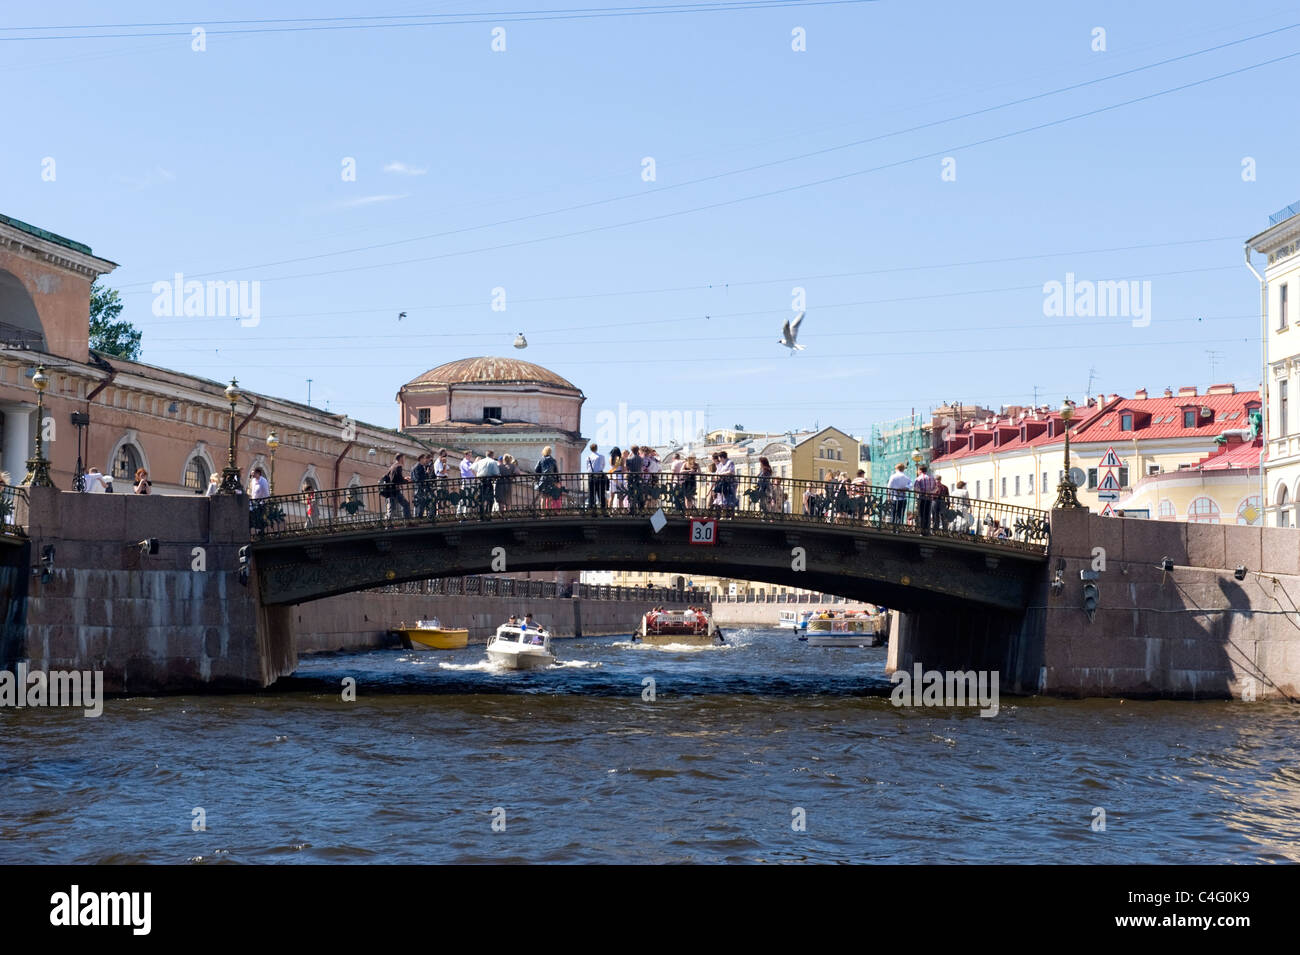 Russland, St. Petersburg, Moyka Kanal mit wenig stabile Brücke & touristischen Sightseeing Sportboote, Boote oder Schiffe Stockfoto